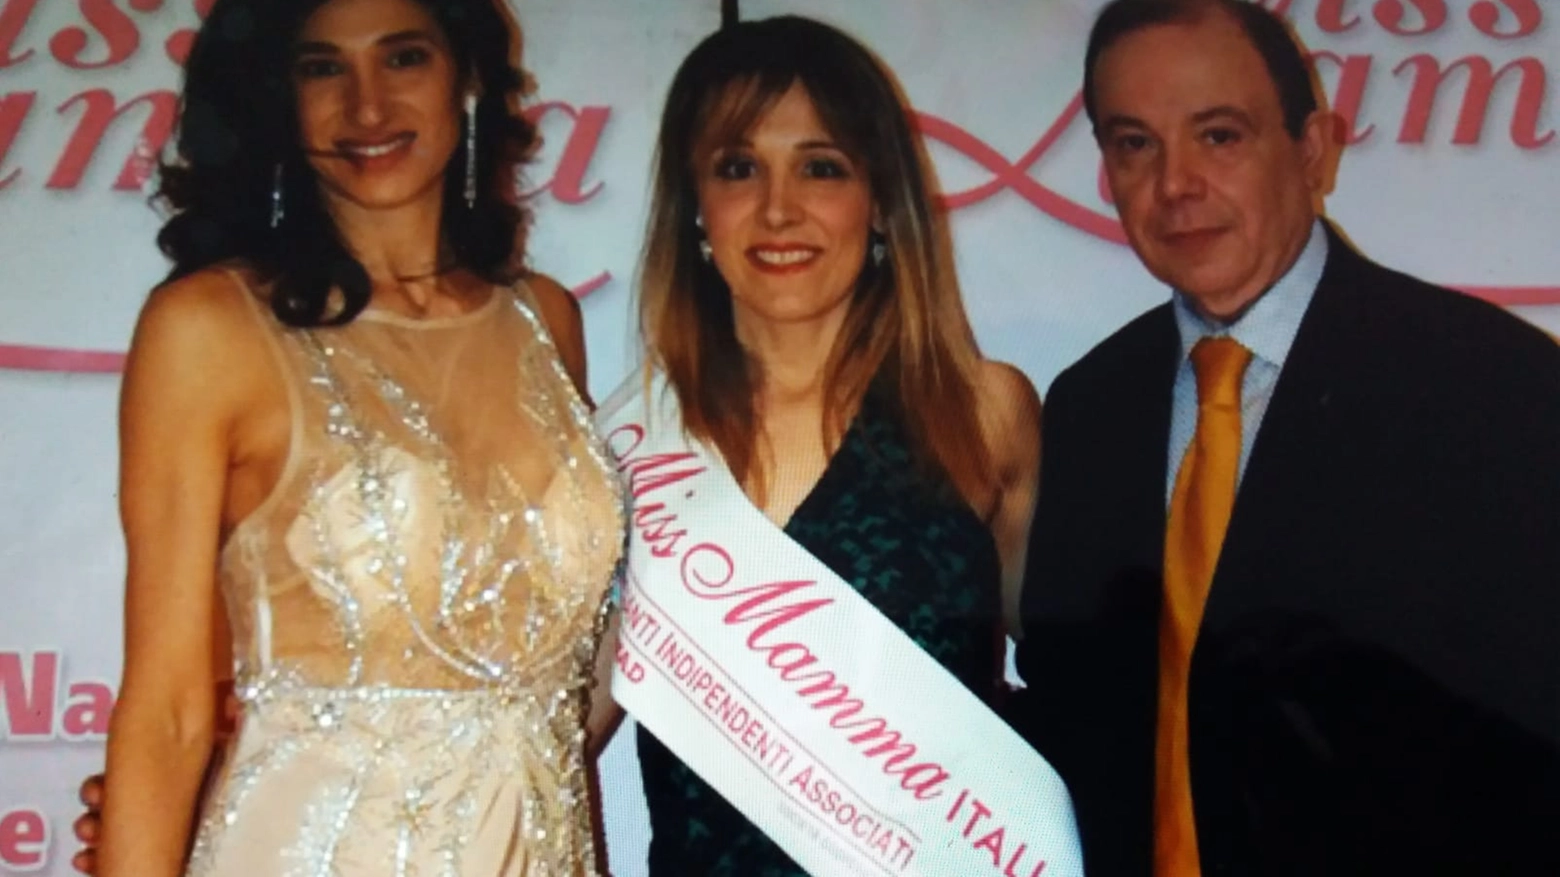 Sonia Falconi con la fascia di "Miss Mamma Italiana sorriso"